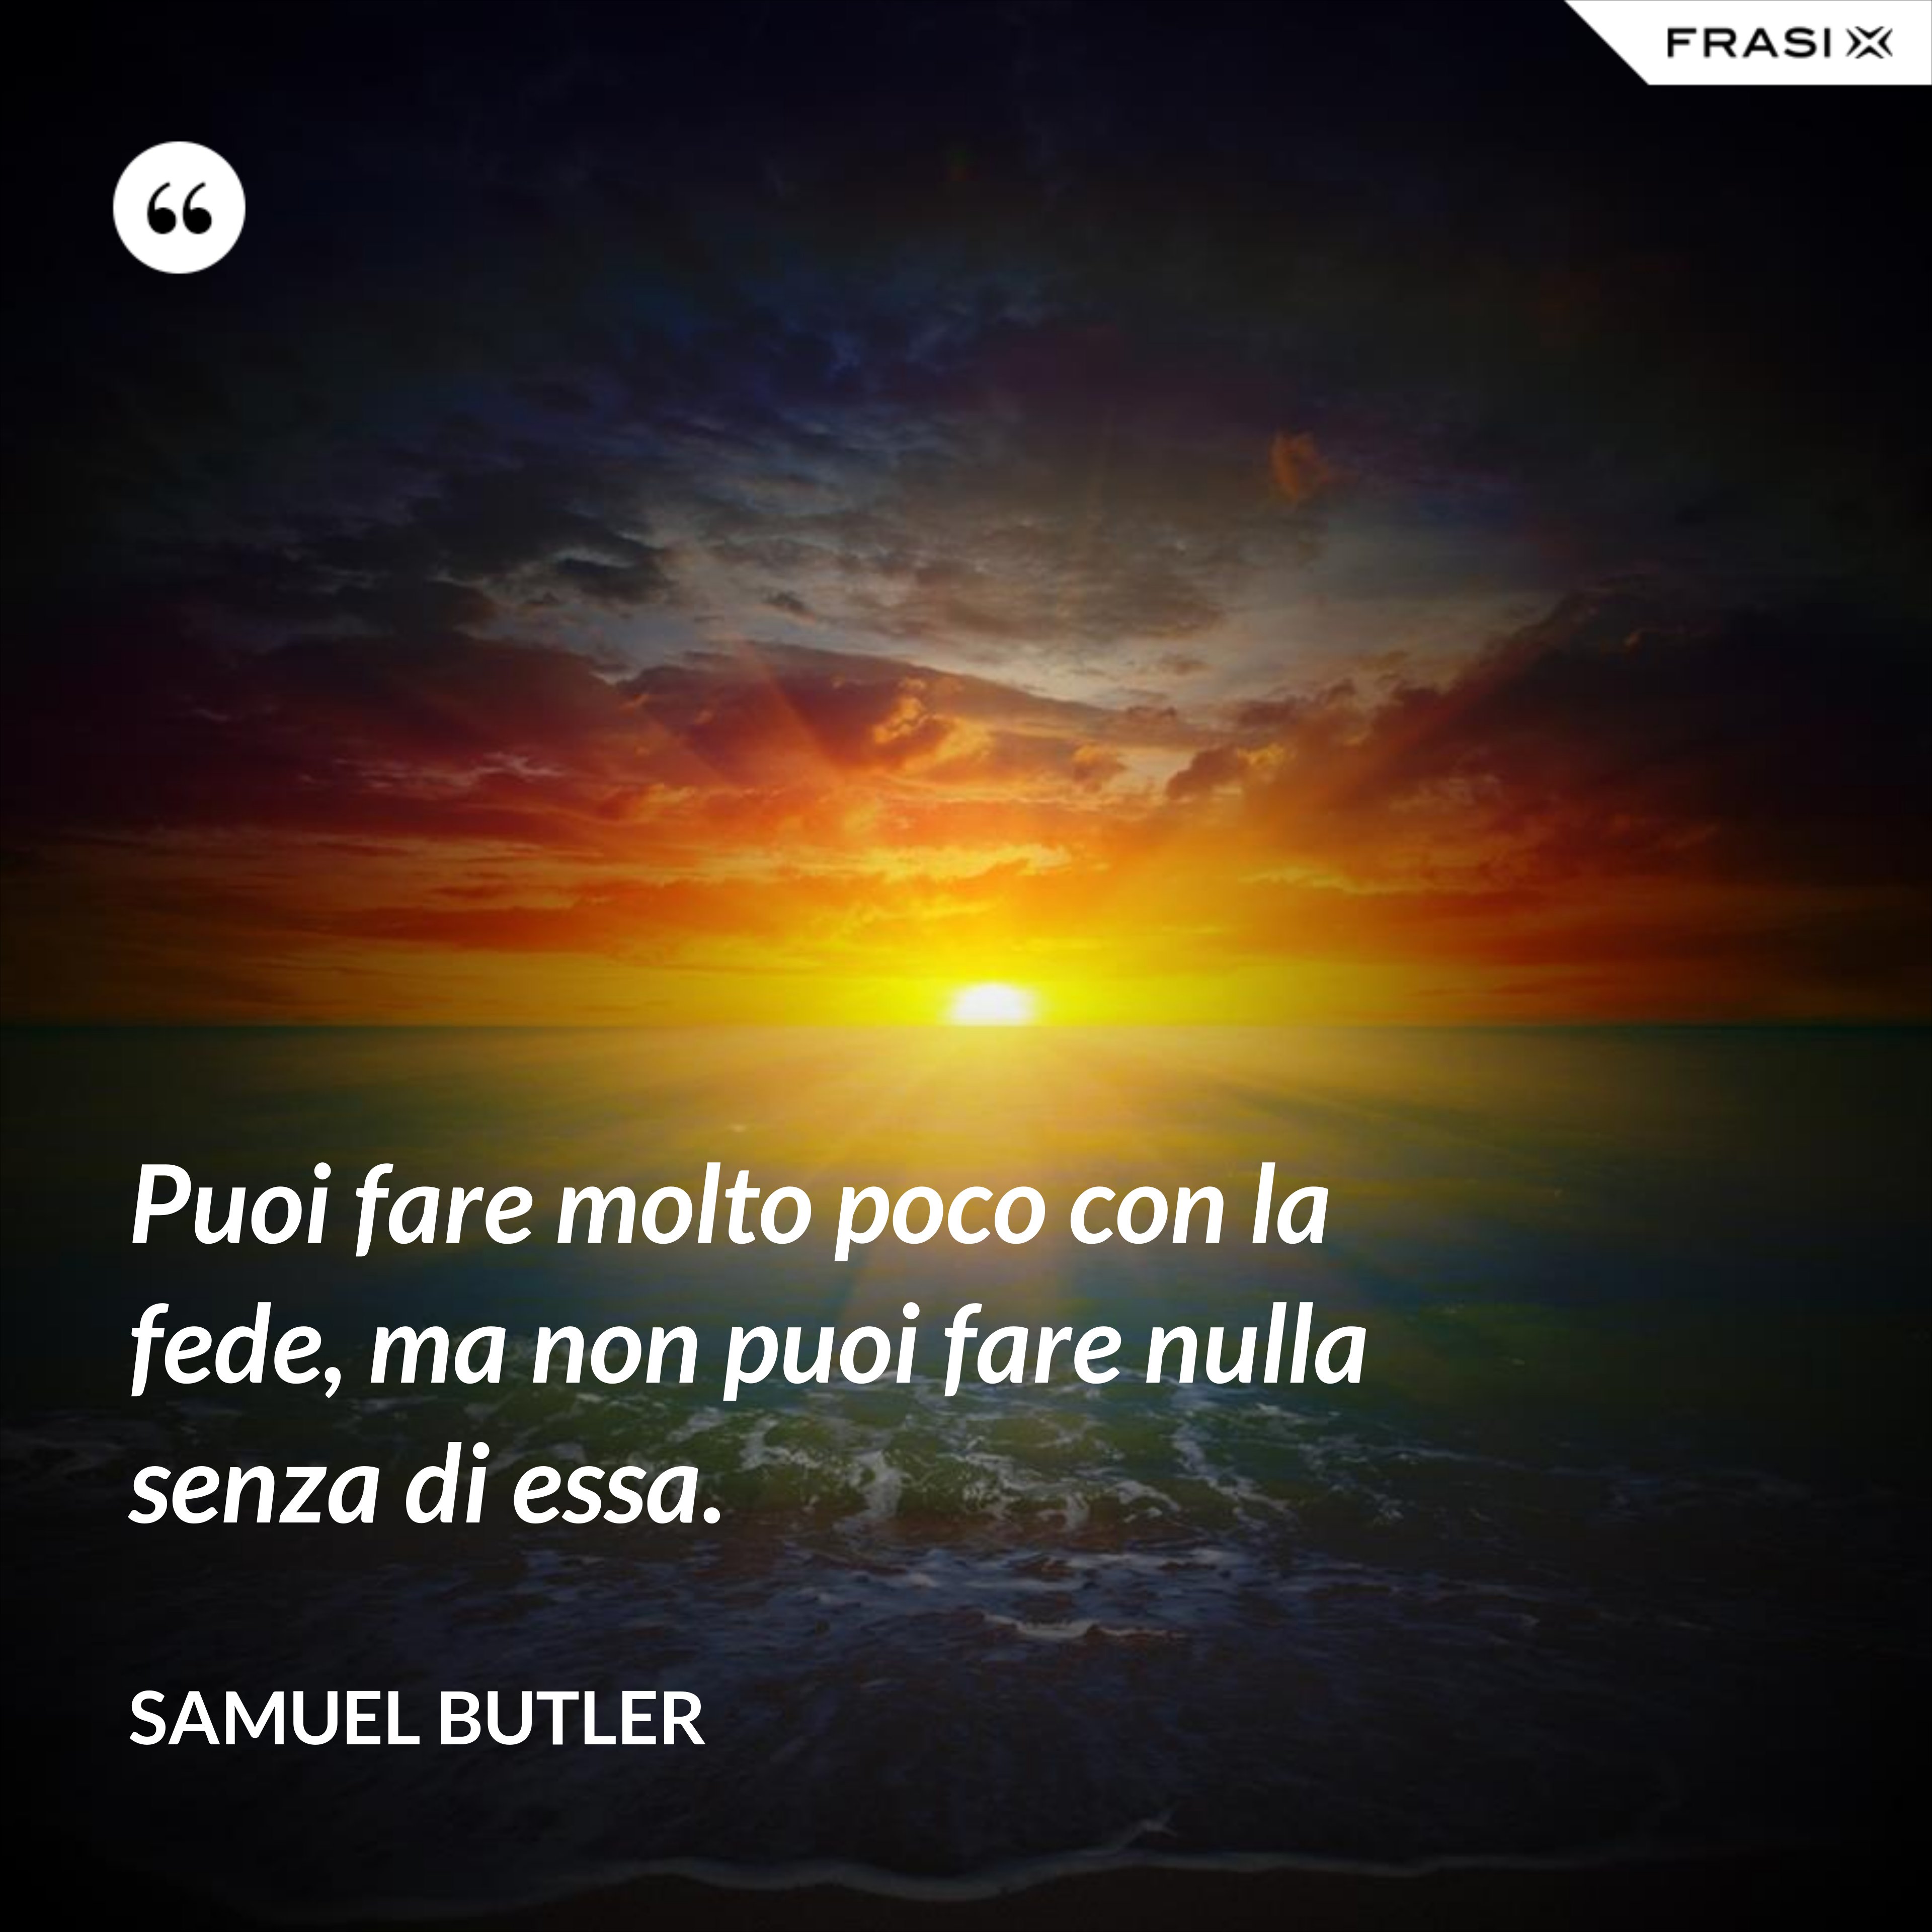 Puoi fare molto poco con la fede, ma non puoi fare nulla senza di essa. - Samuel Butler